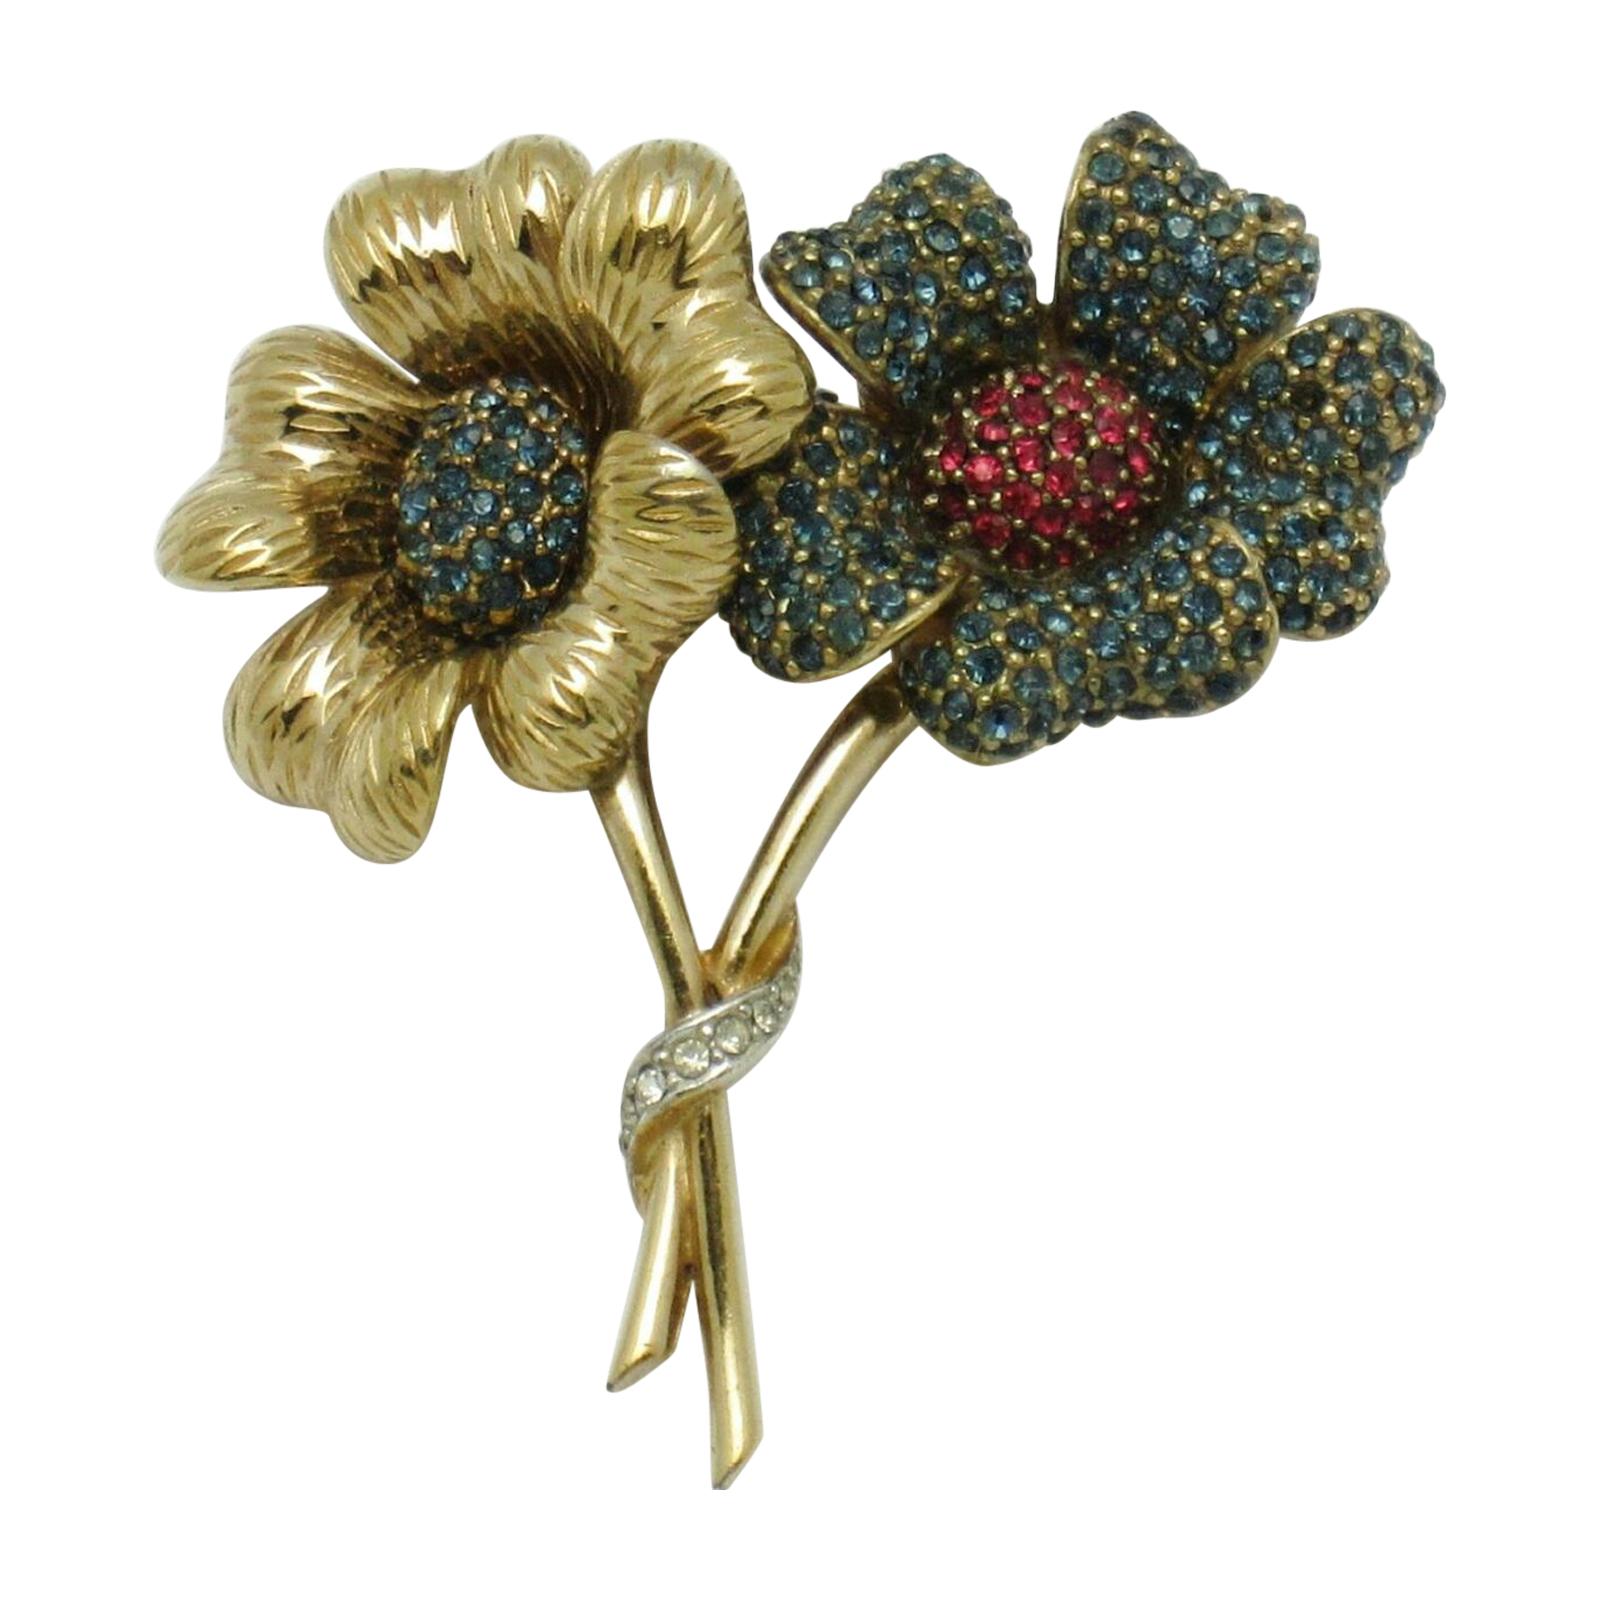 Designer CINER Signed Sparkling Ice Crystal Double Flower Brooch Pin For Sale